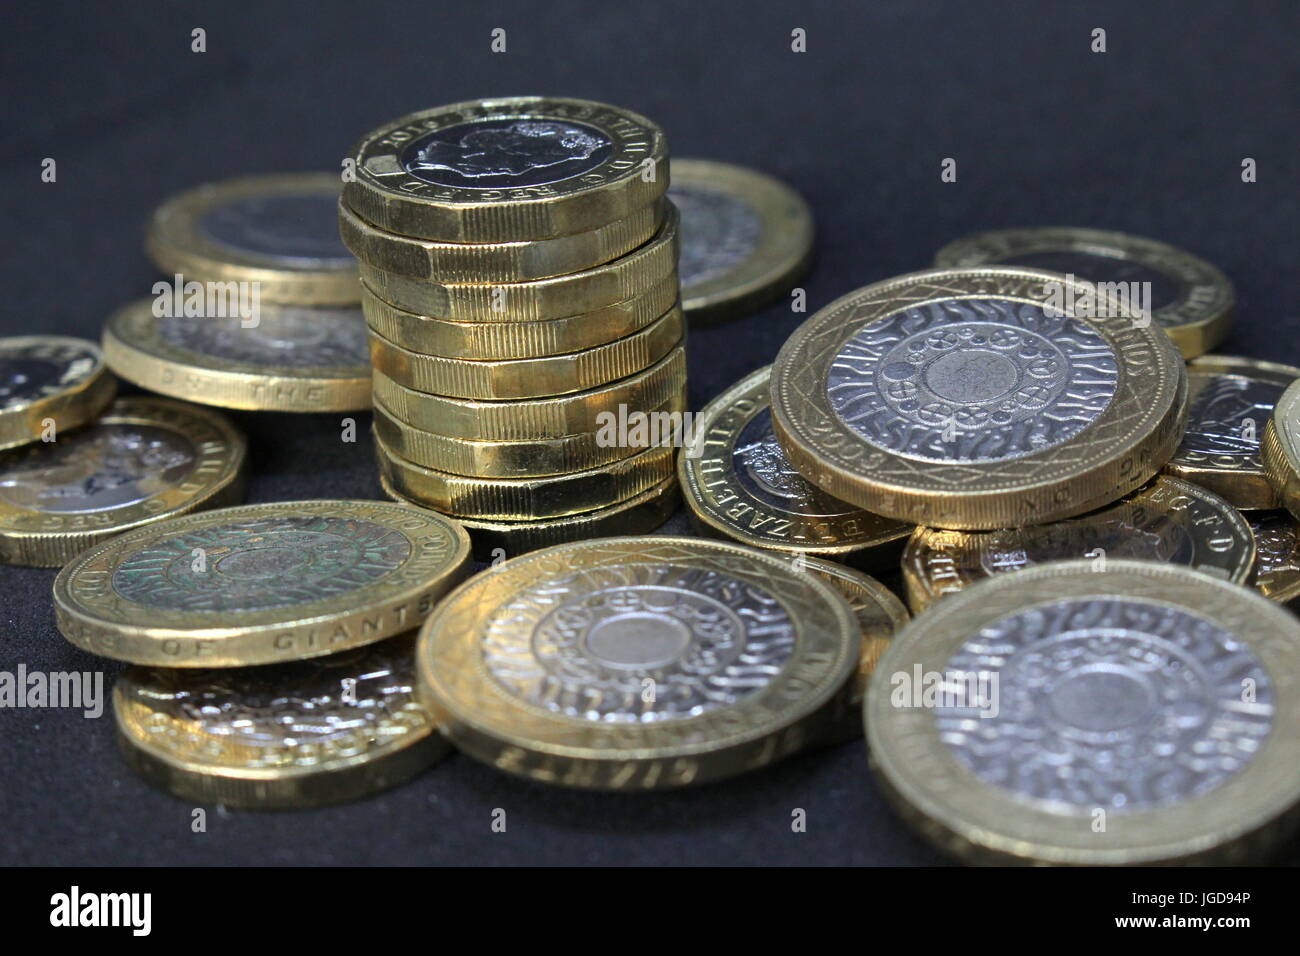 Ein Haufen von britischen Pfund Sterling Münzen - neu Pfund Münzen und zwei-Pfund-Münzen vor einem dunklen Hintergrund Stockfoto